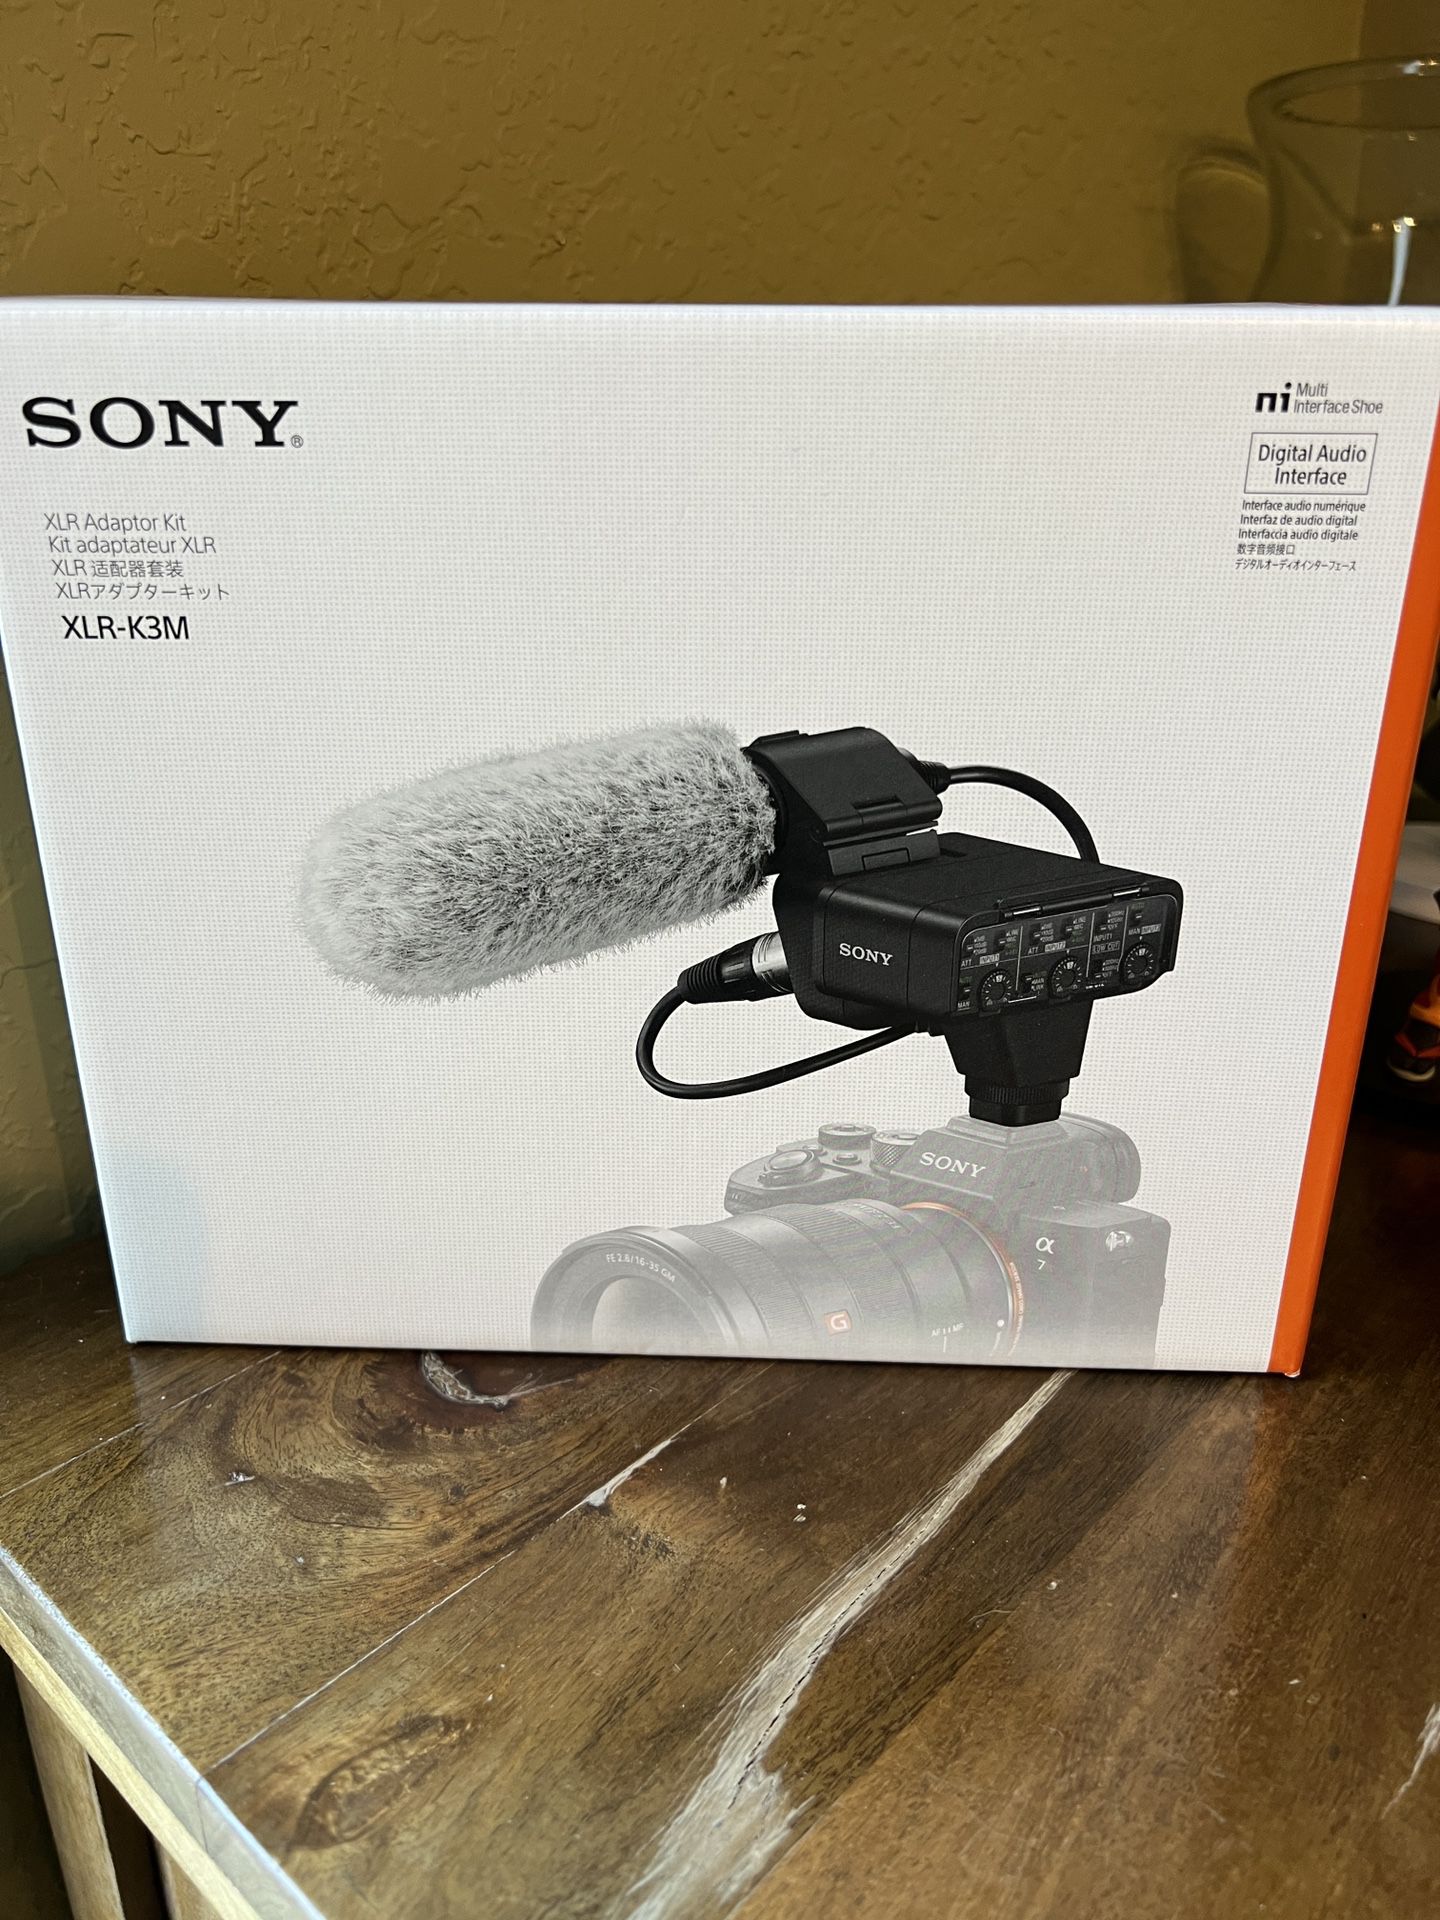 Sony XLR-K3M